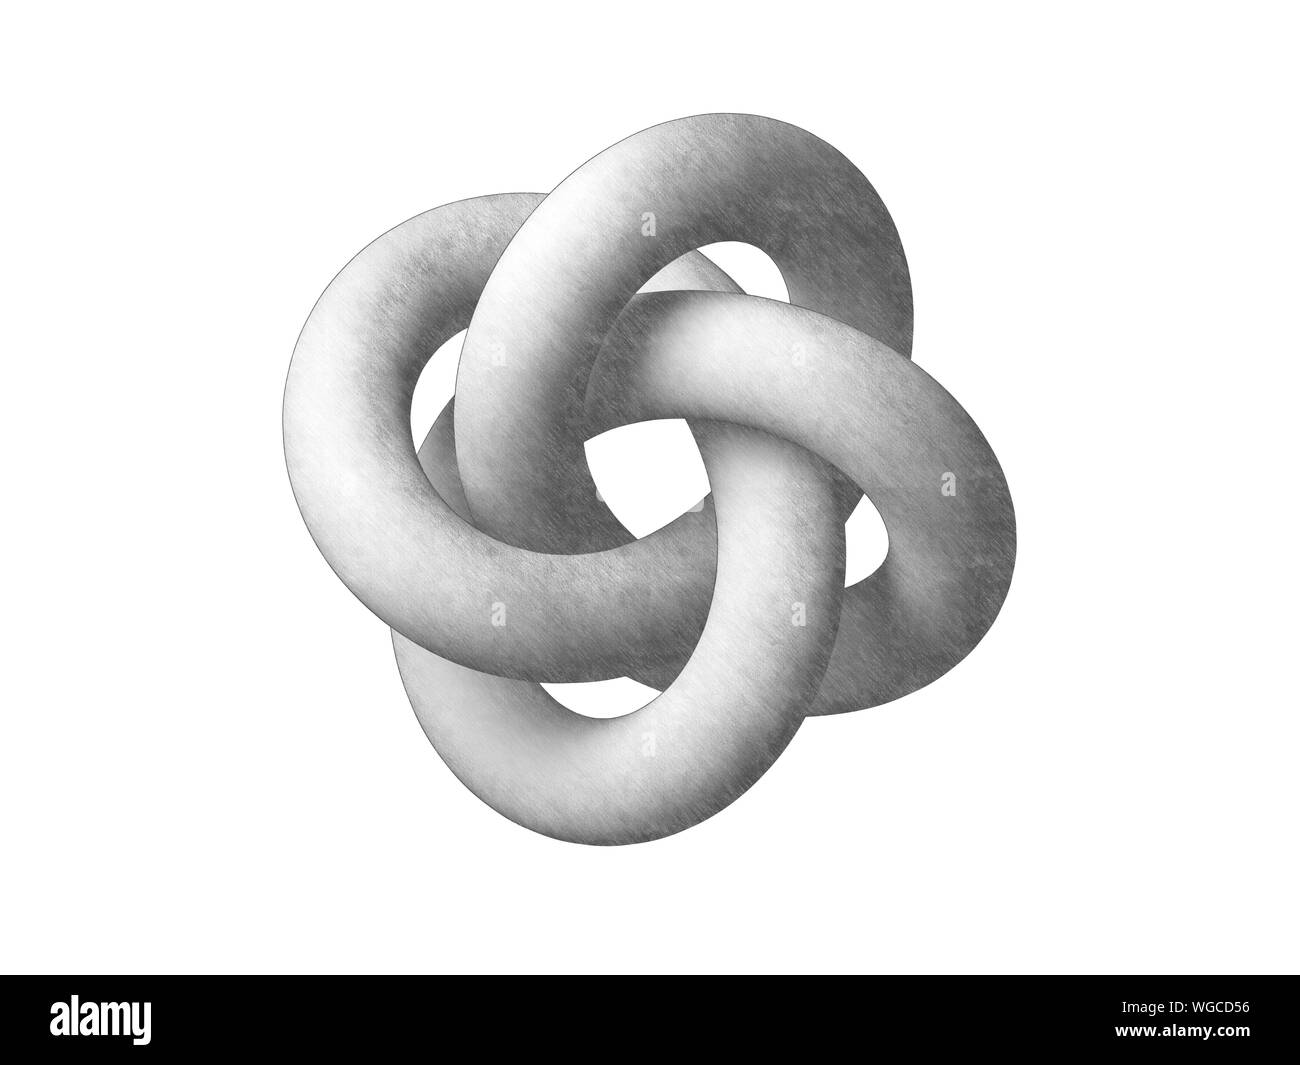 Torus knot représentation géométrique. Objet abstrait isolé sur fond blanc. Crayon Graphite rendu 3d illustration stylisée Banque D'Images